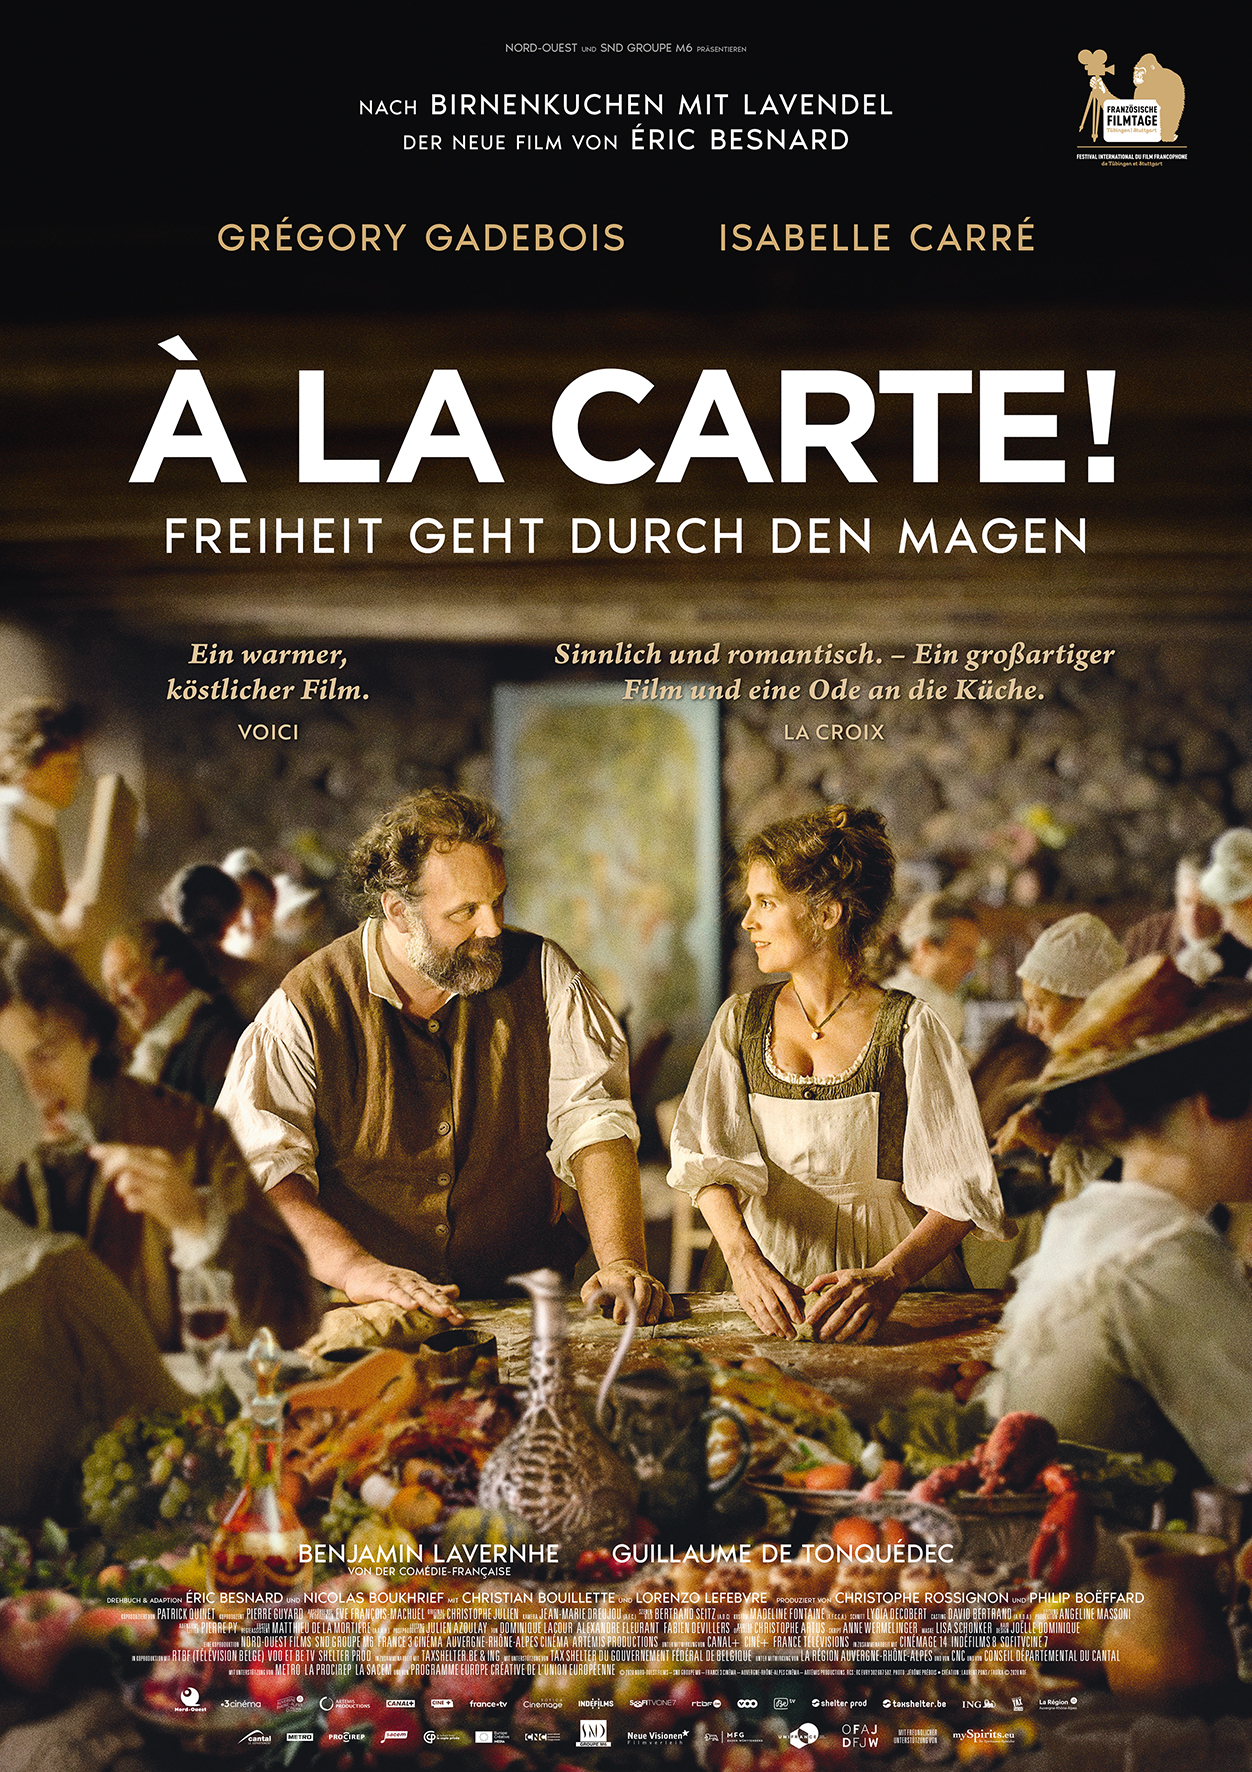 Trailer: "À LA CARTE! – FREIHEIT GEHT DURCH DEN MAGEN"